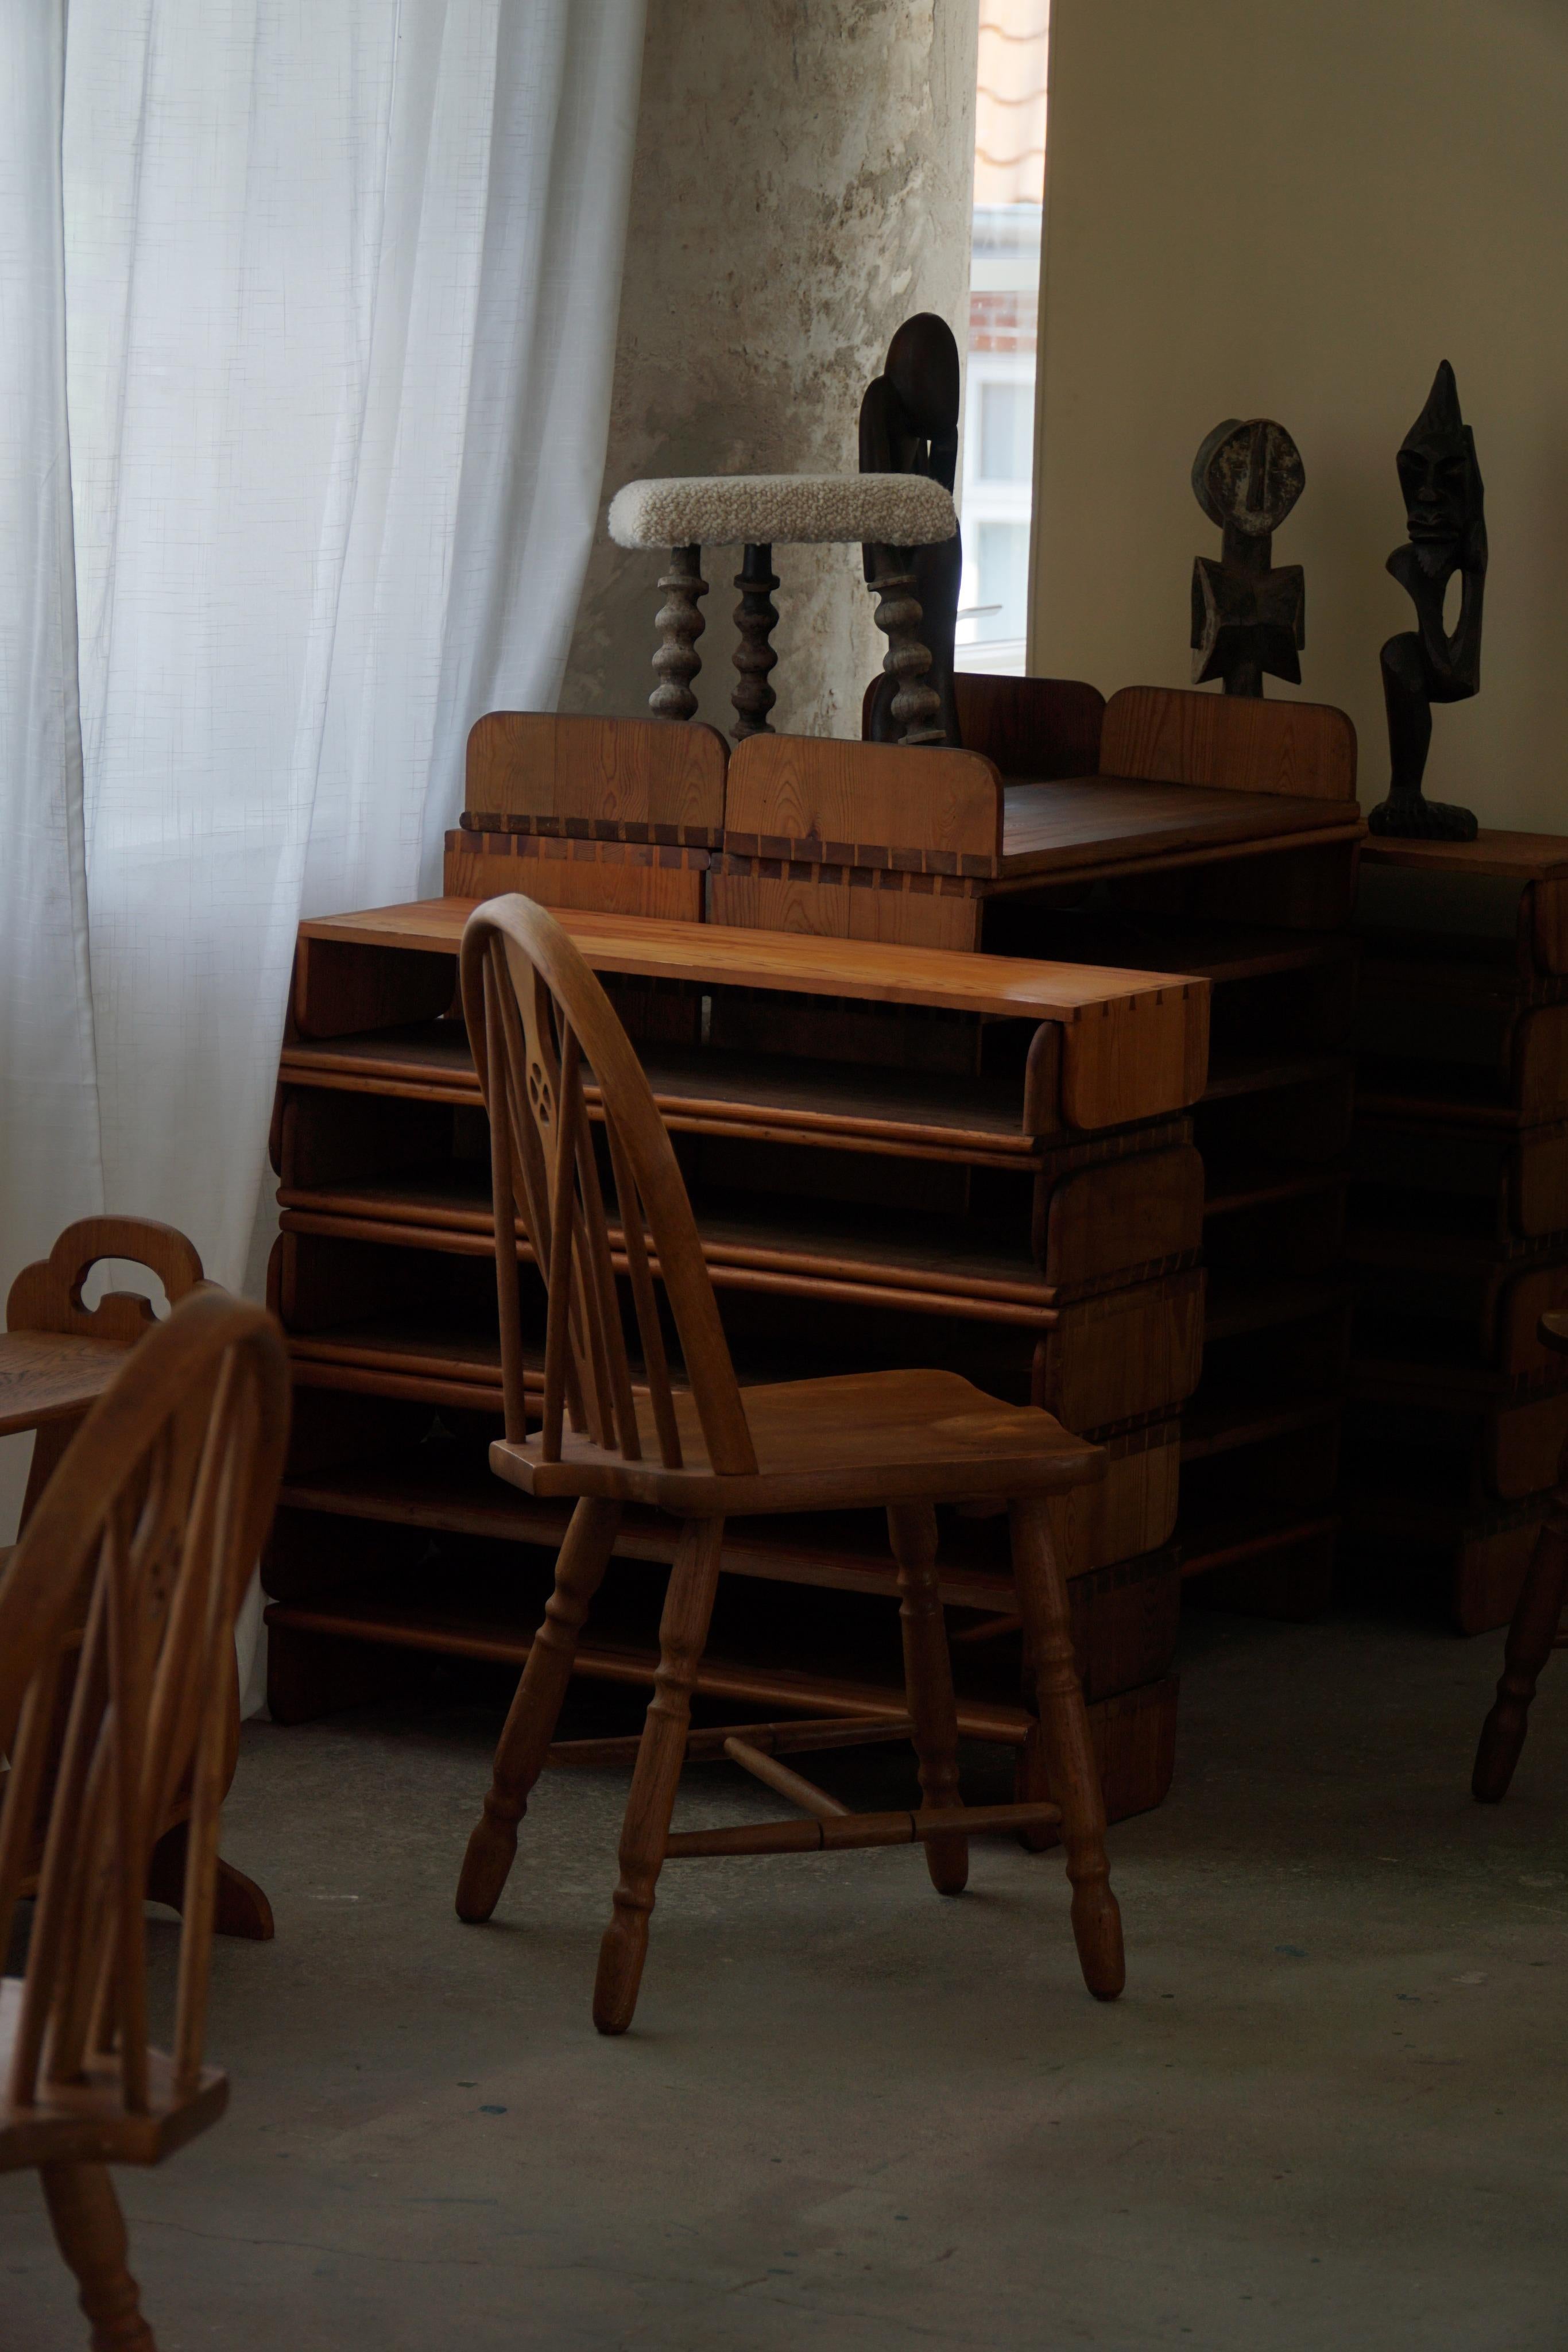 Wir präsentieren einen prächtigen Satz von sechs Windsor-Esszimmerstühlen, die aus massiver Eiche im englischen edwardianischen Stil gefertigt sind und aus dem späten 19. Diese Stühle strahlen zeitlose Eleganz aus und verkörpern die Handwerkskunst